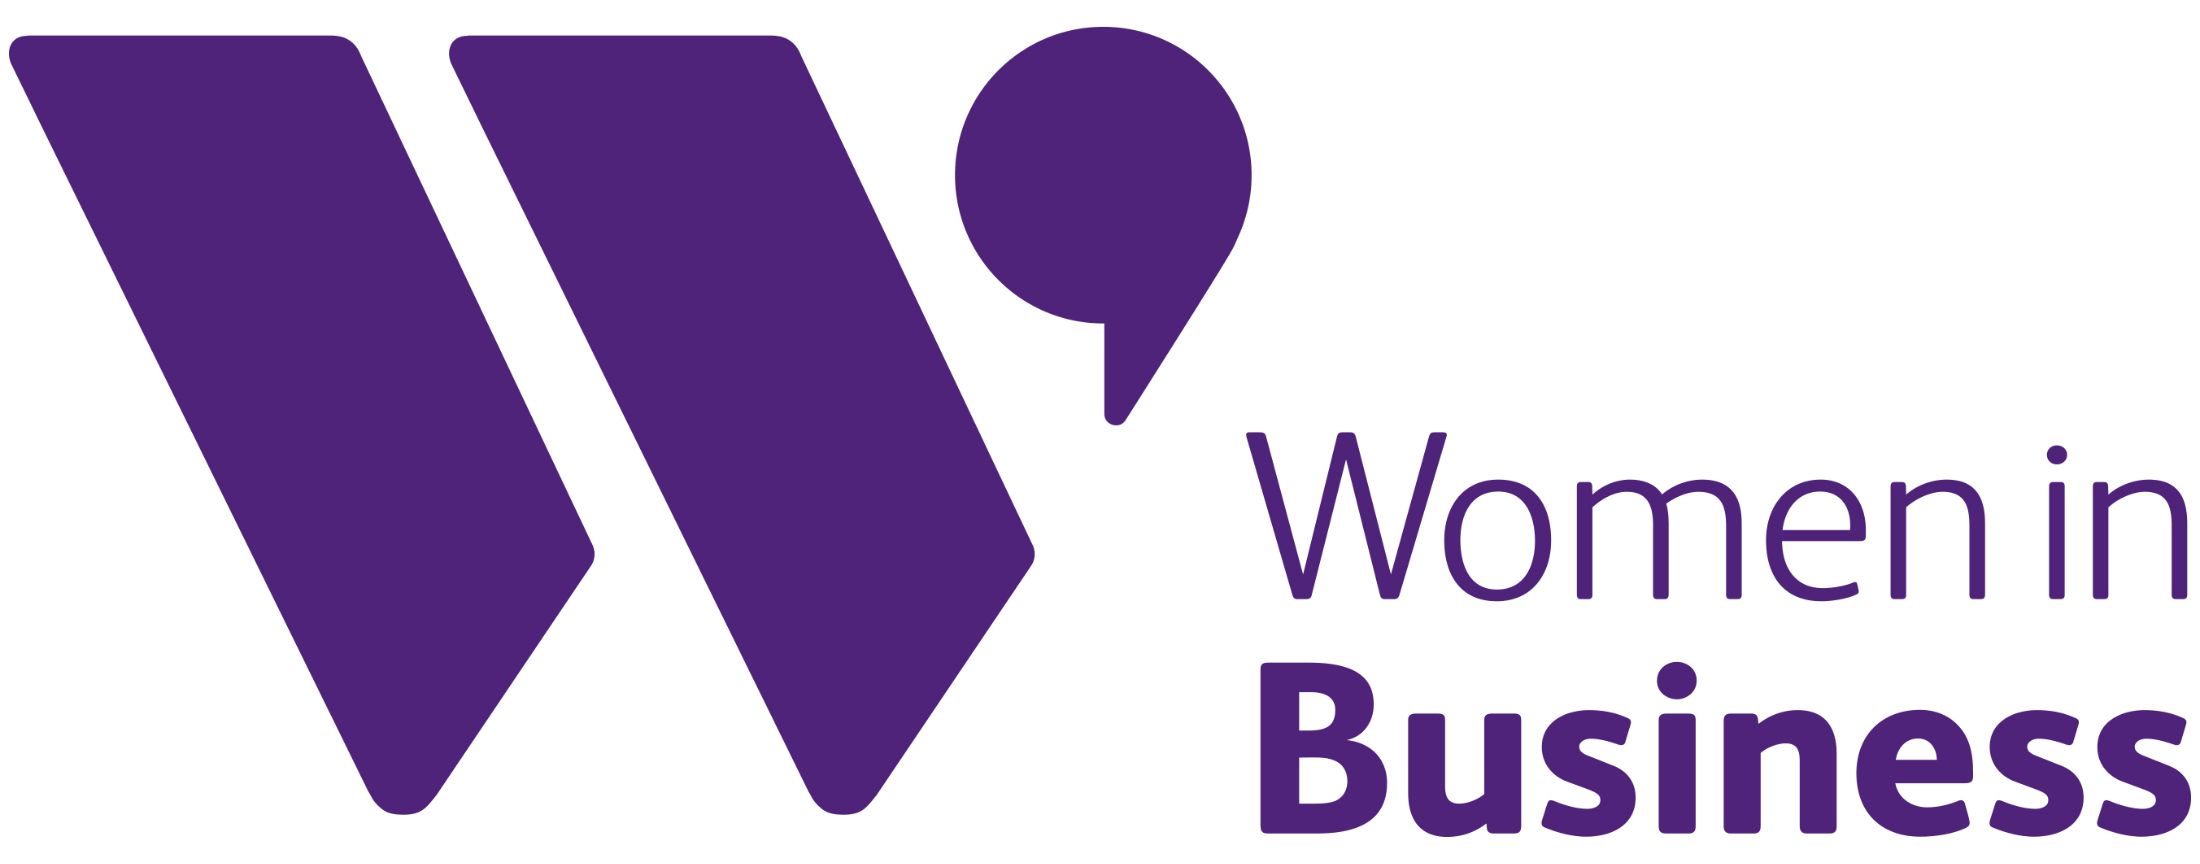 women-in-business-purple-landscape-logo-300-dpi(1).jpg